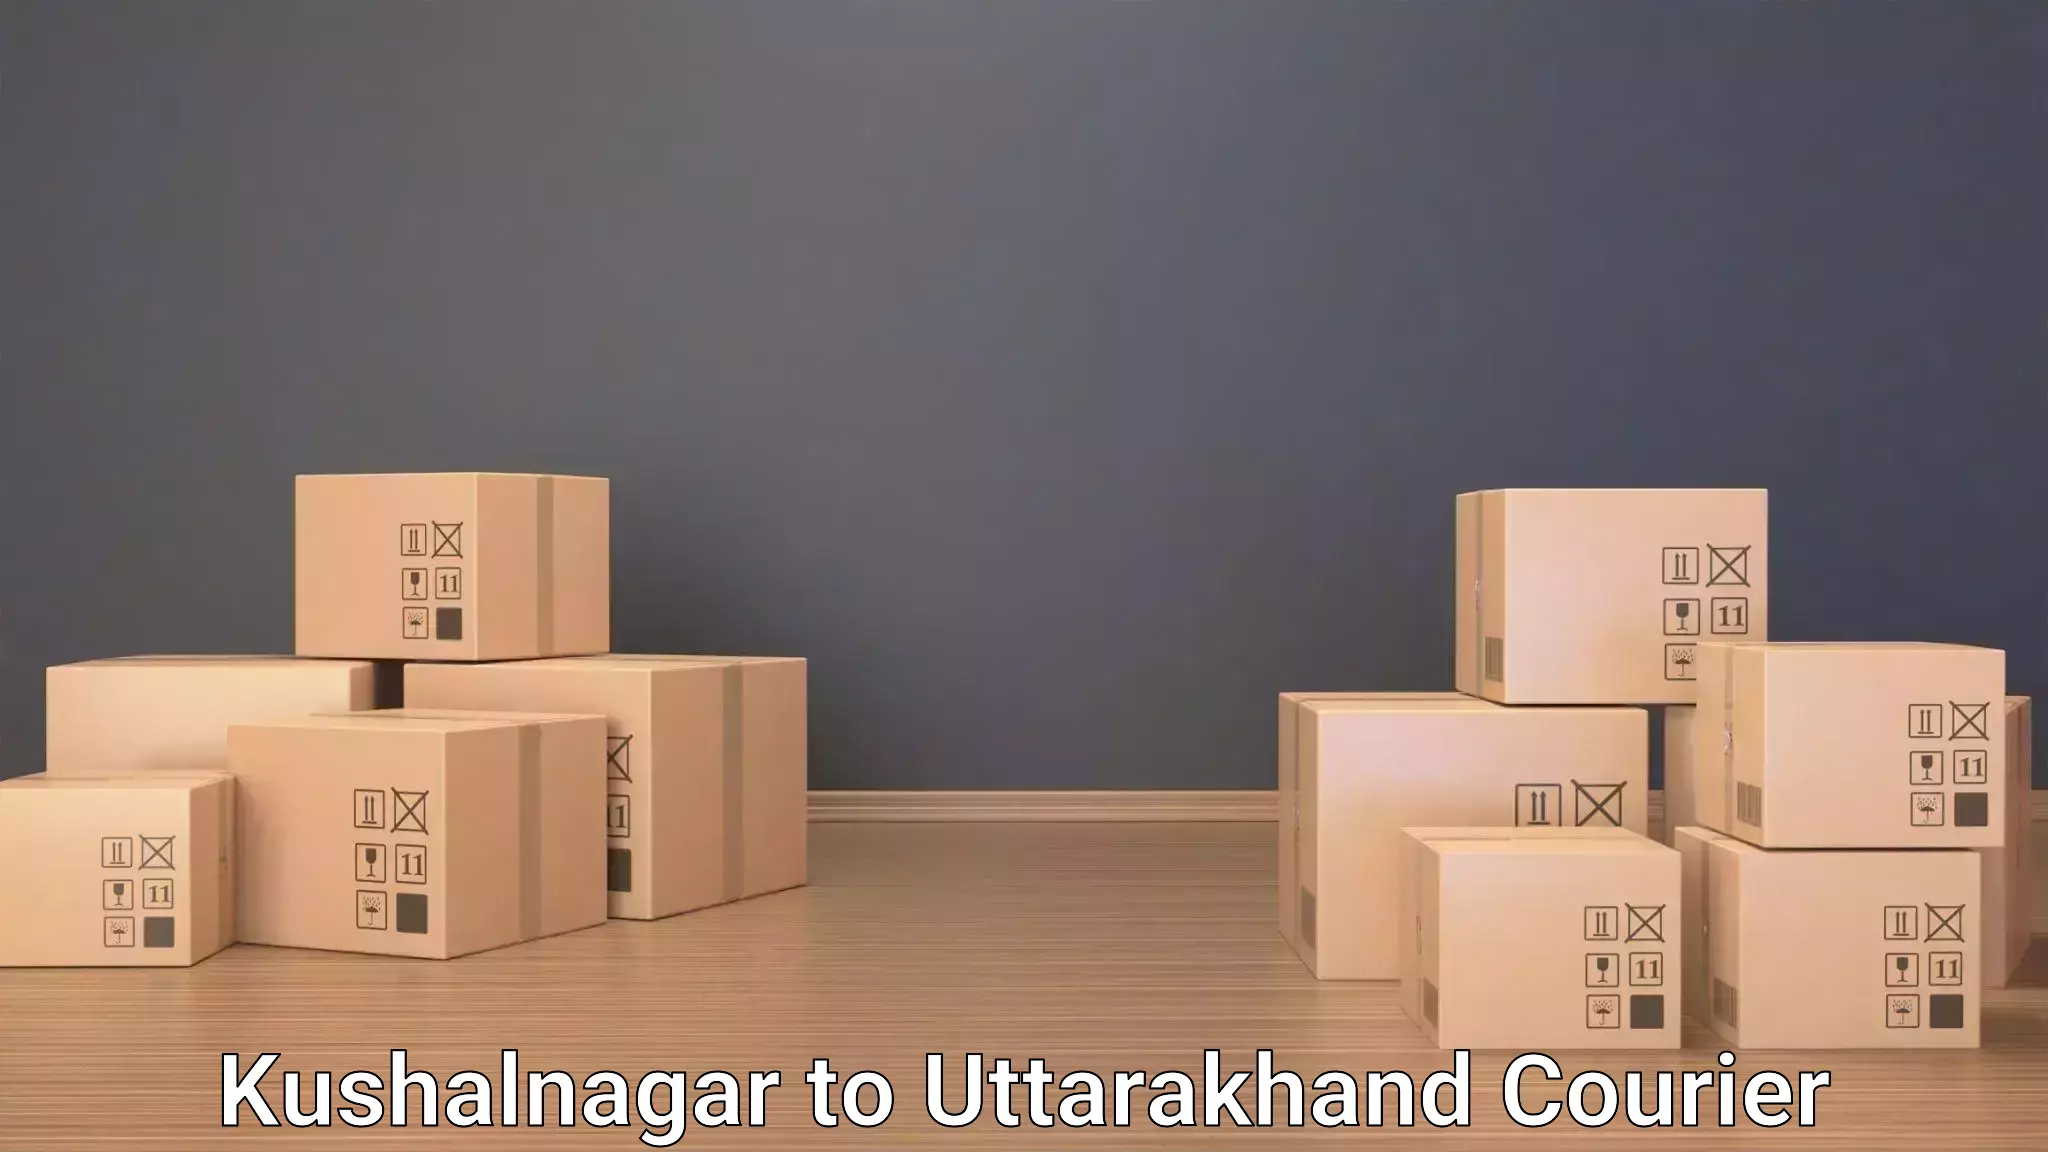 Baggage transport technology Kushalnagar to Didihat